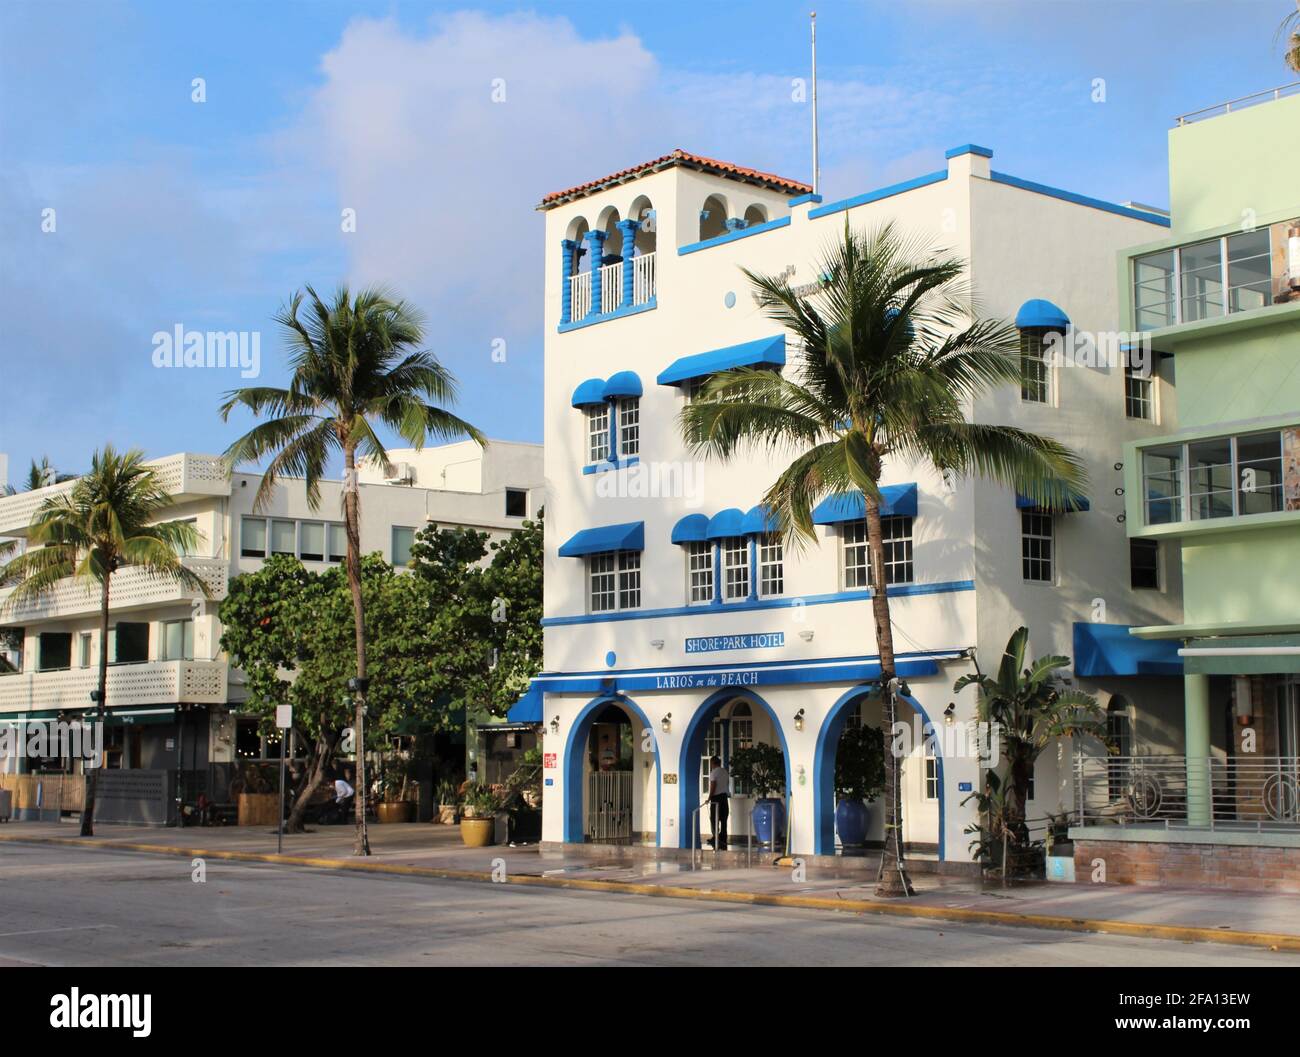 Shore Park Hotel sur Ocean Drive, ville de Miami Beach, Floride, dans le quartier art déco de South Beach avec un restaurant appelé Larios on the Beach Banque D'Images